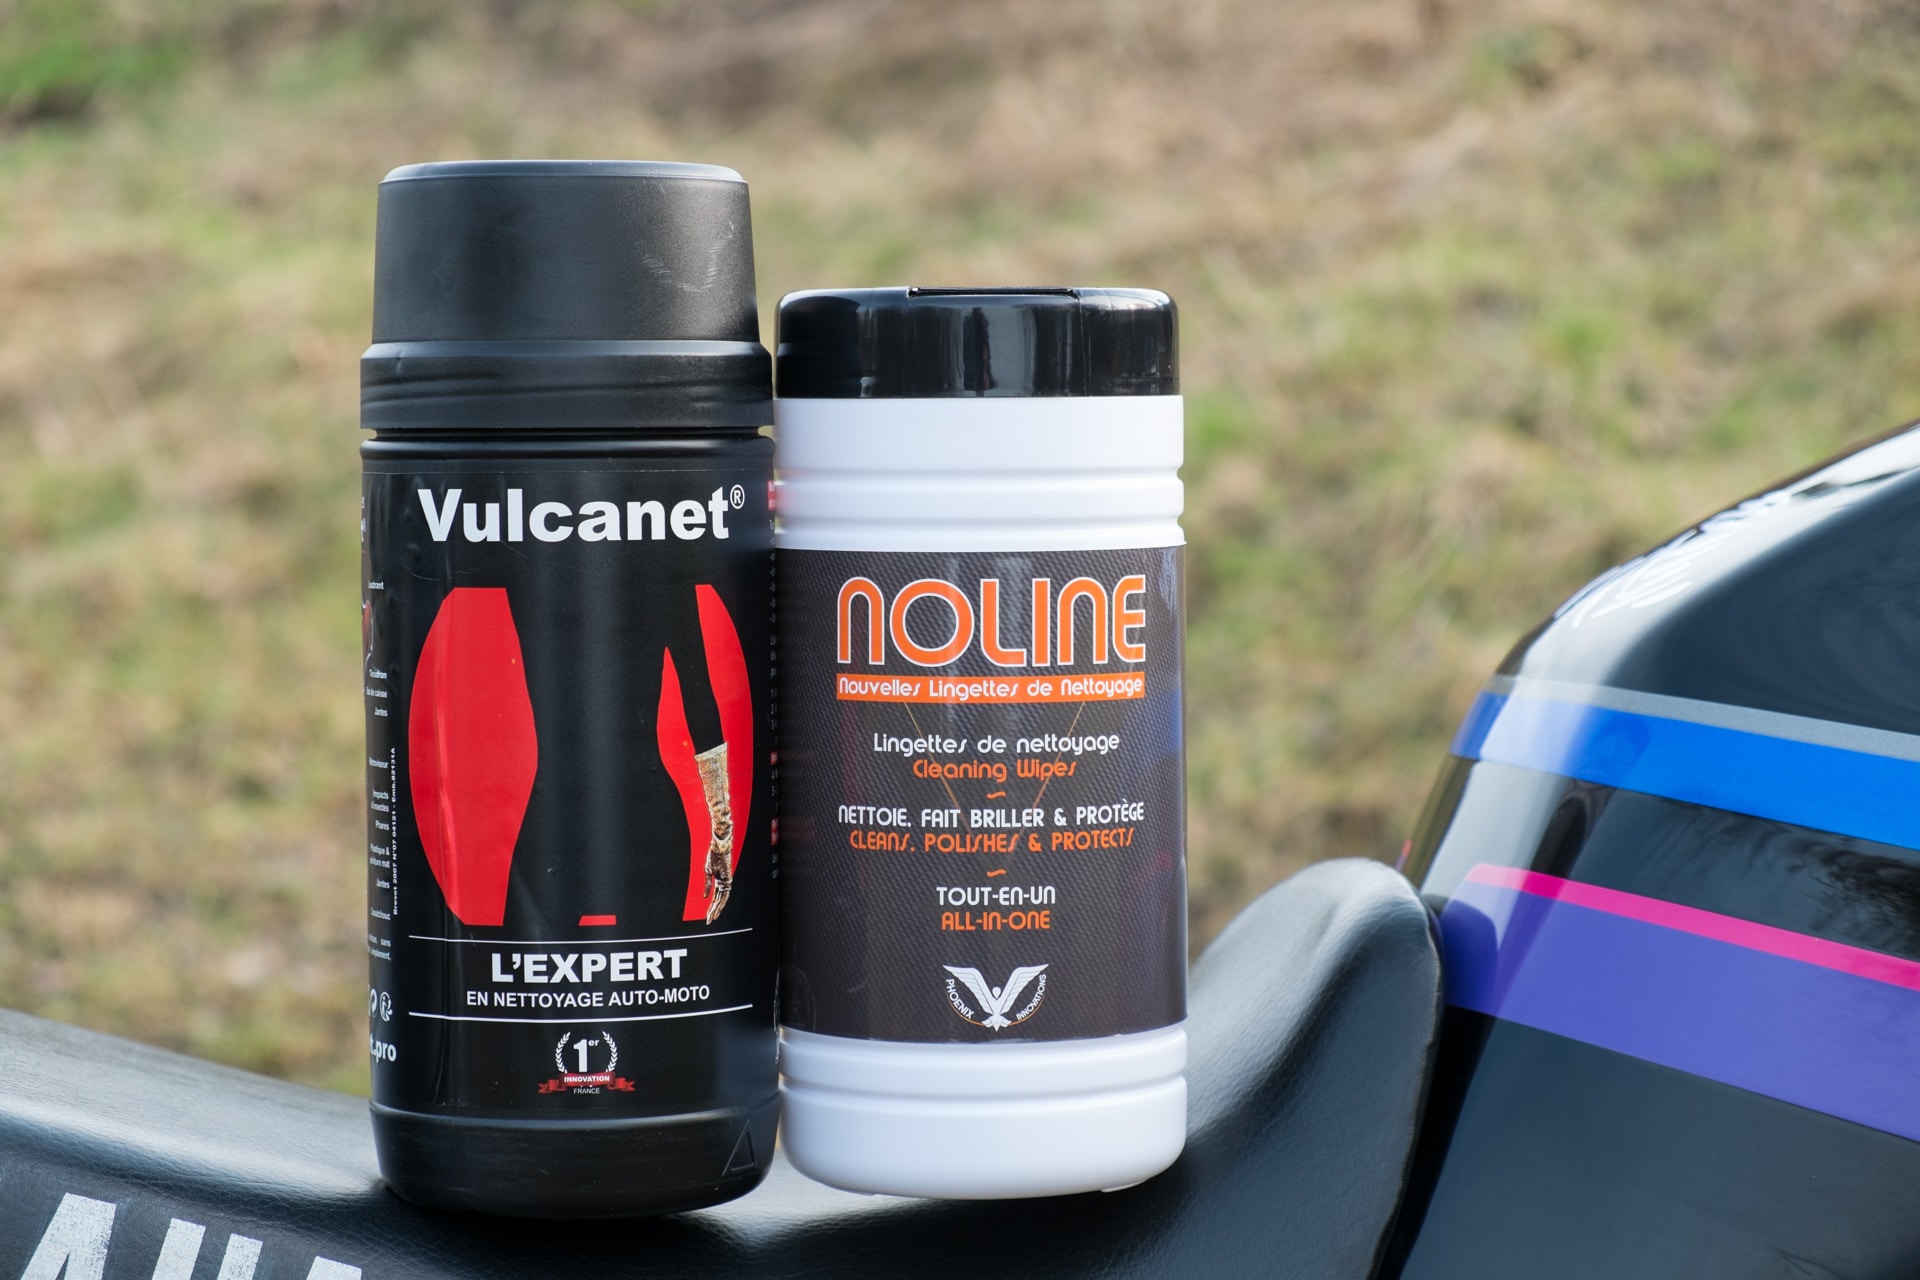 Vulcanet VS Noline : duel des lingettes, le test ! – Motard Adventure